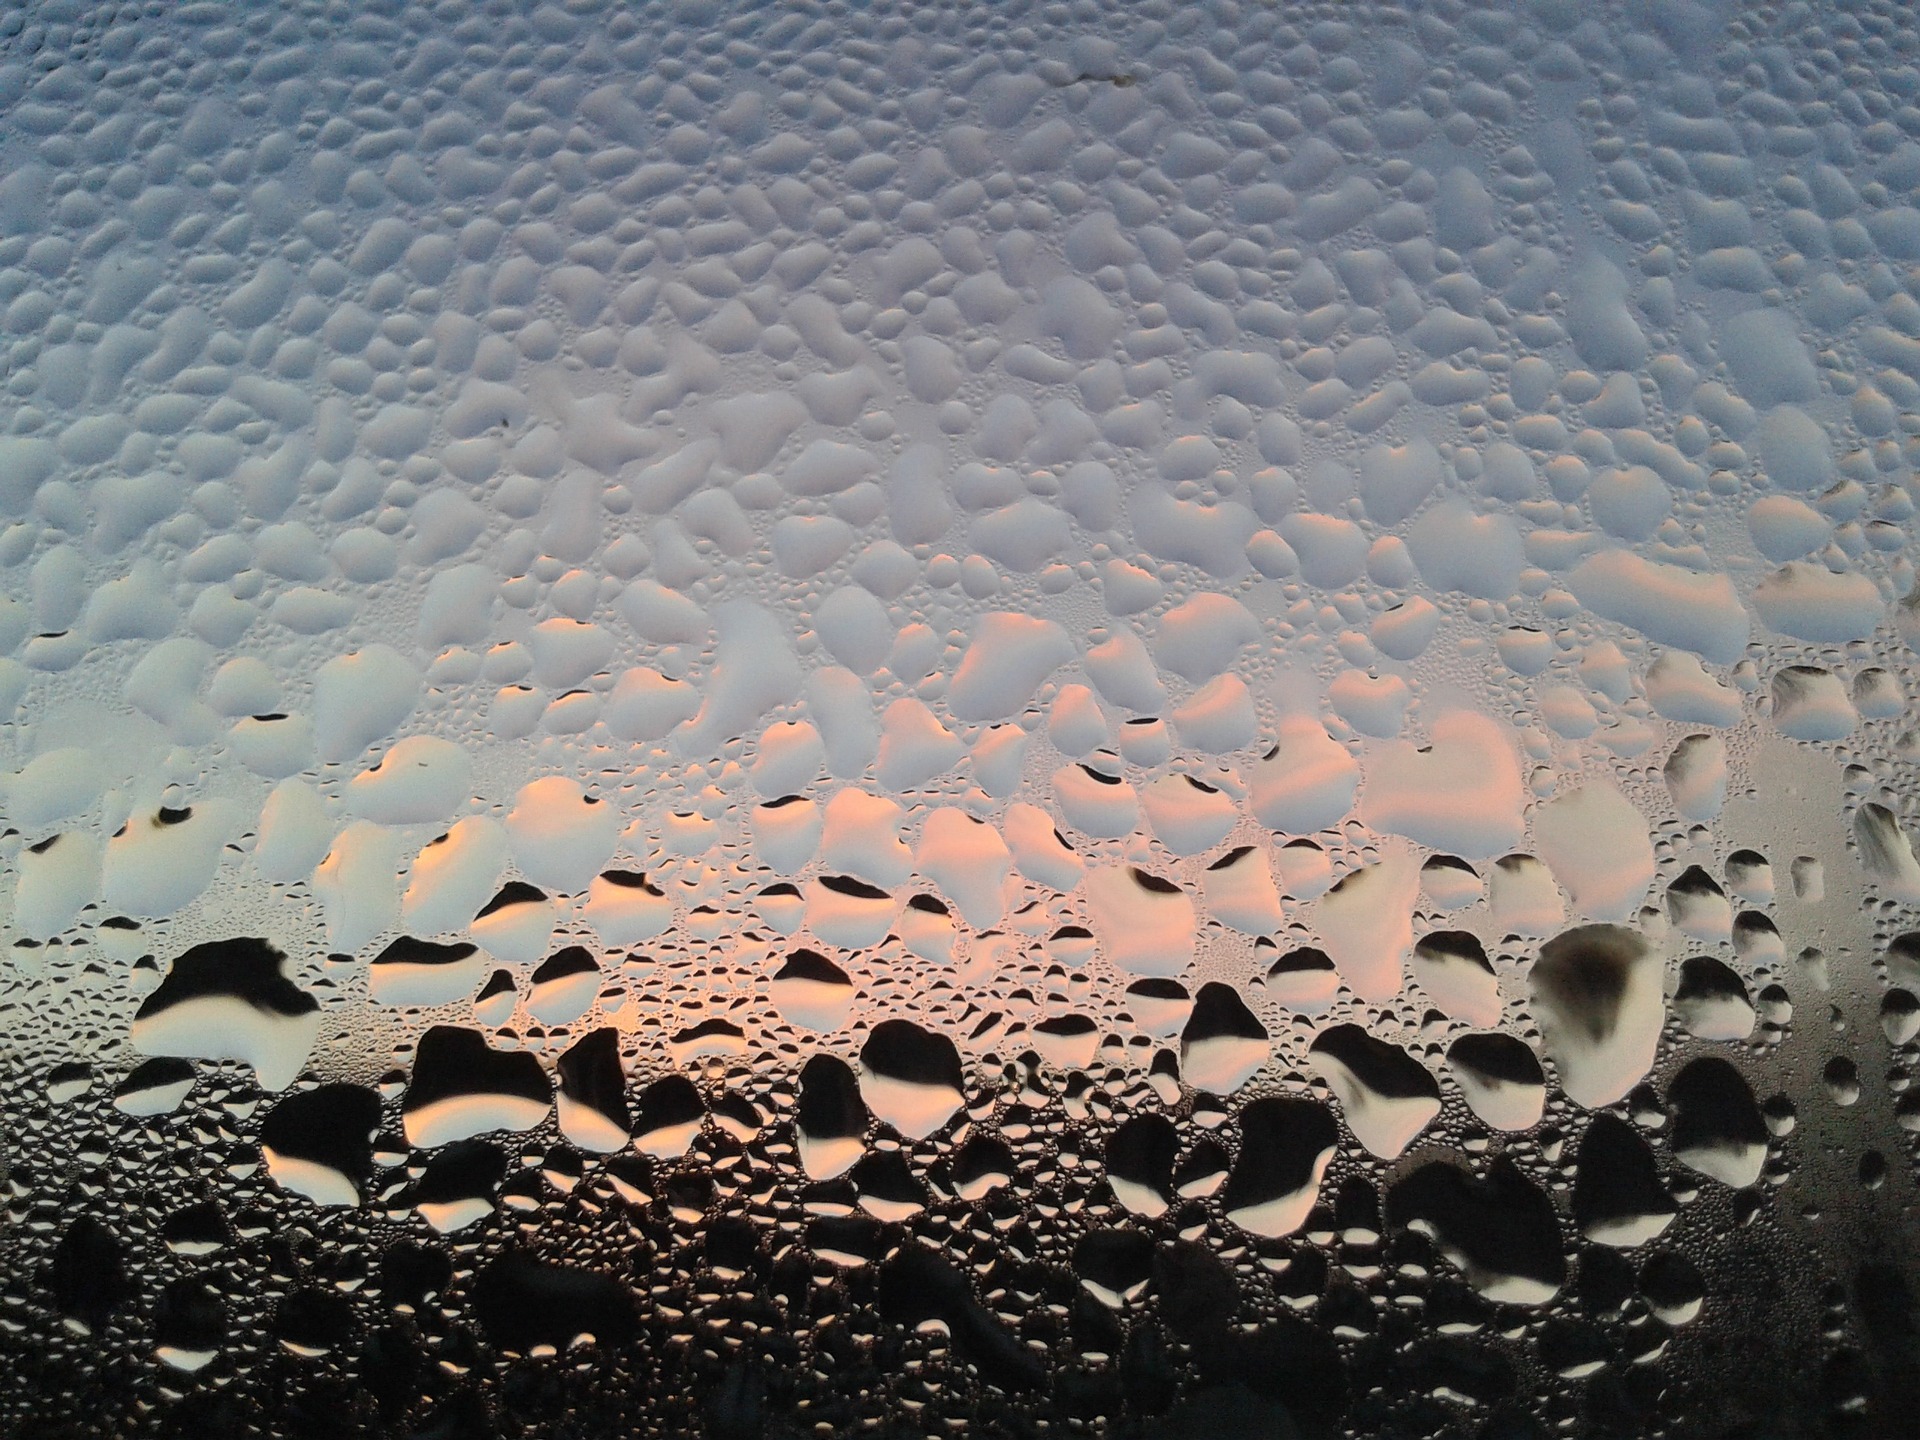 Tipps gegen nasse Fenster im Winter